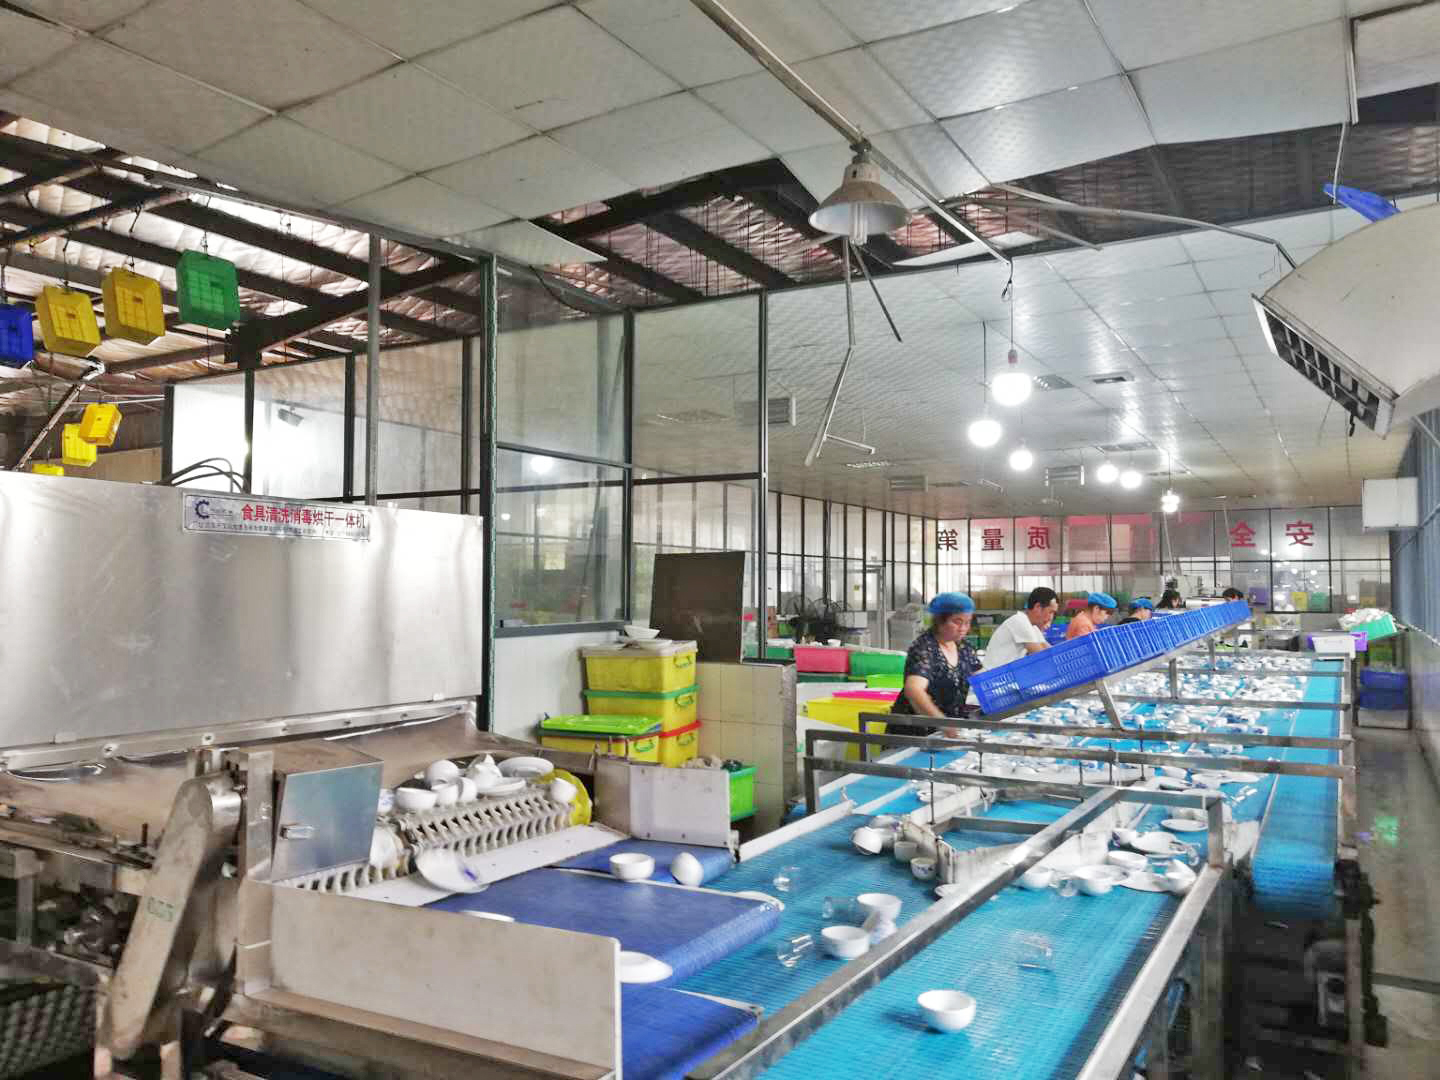 湖南长沙某餐具配送中心是一家集中式餐饮具消毒服务企业，购诺贝思燃气蒸汽发生器配套餐具消毒